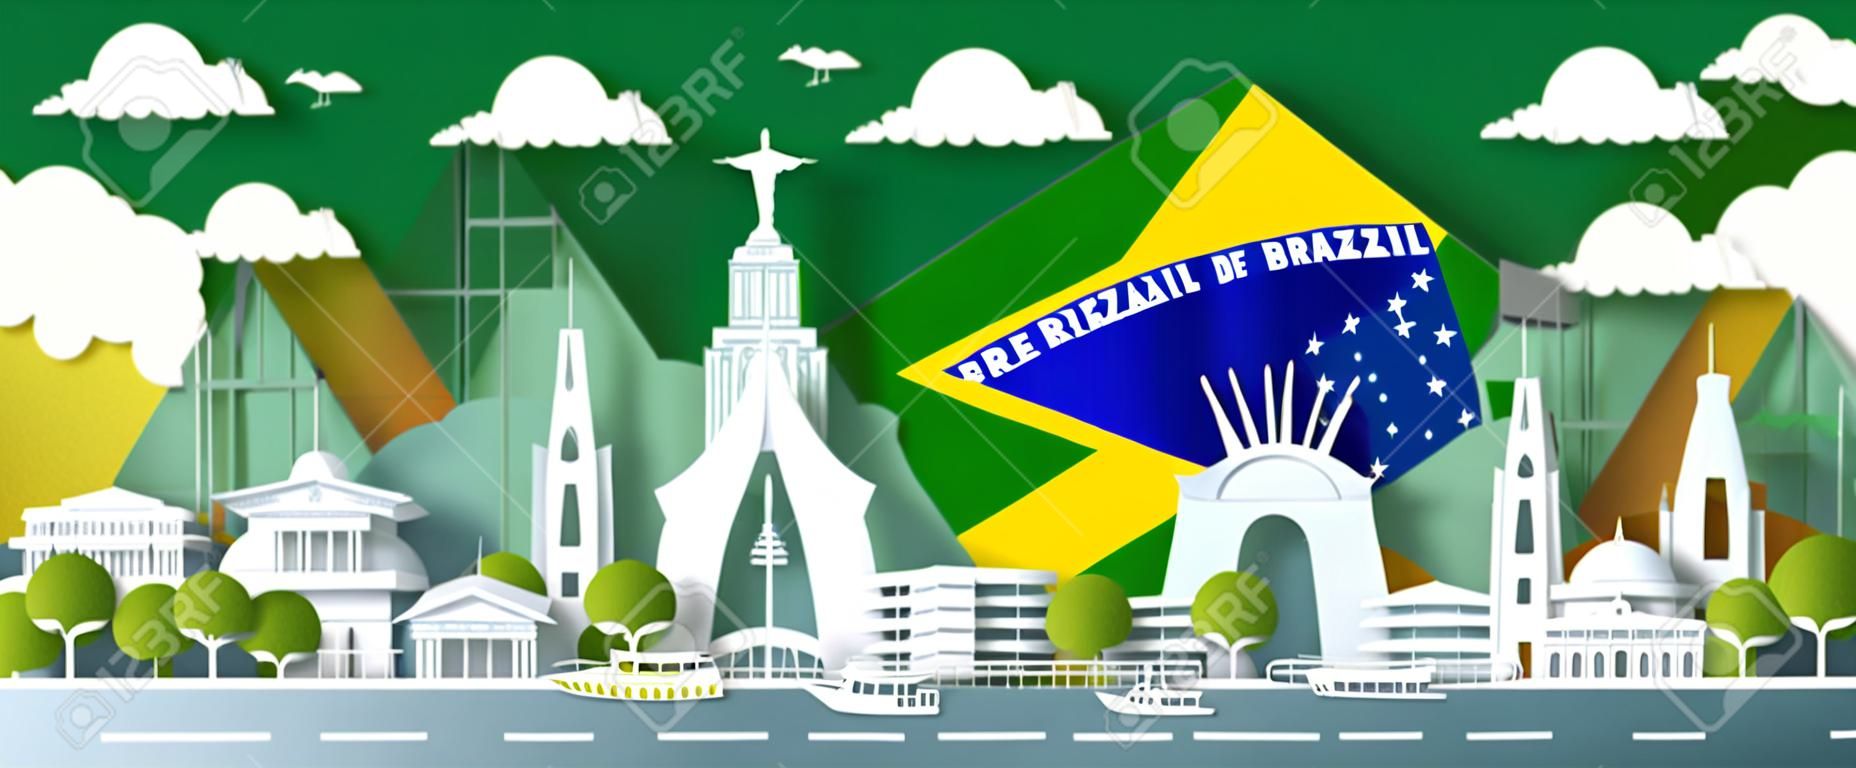 Célébration de l'anniversaire de l'illustration historique Journée du Brésil avec fond de drapeau vert. Monuments de voyage architecture de la ville du Brésil à Rio de Janeiro dans l'art du papier, style papier découpé. Illustration vectorielle